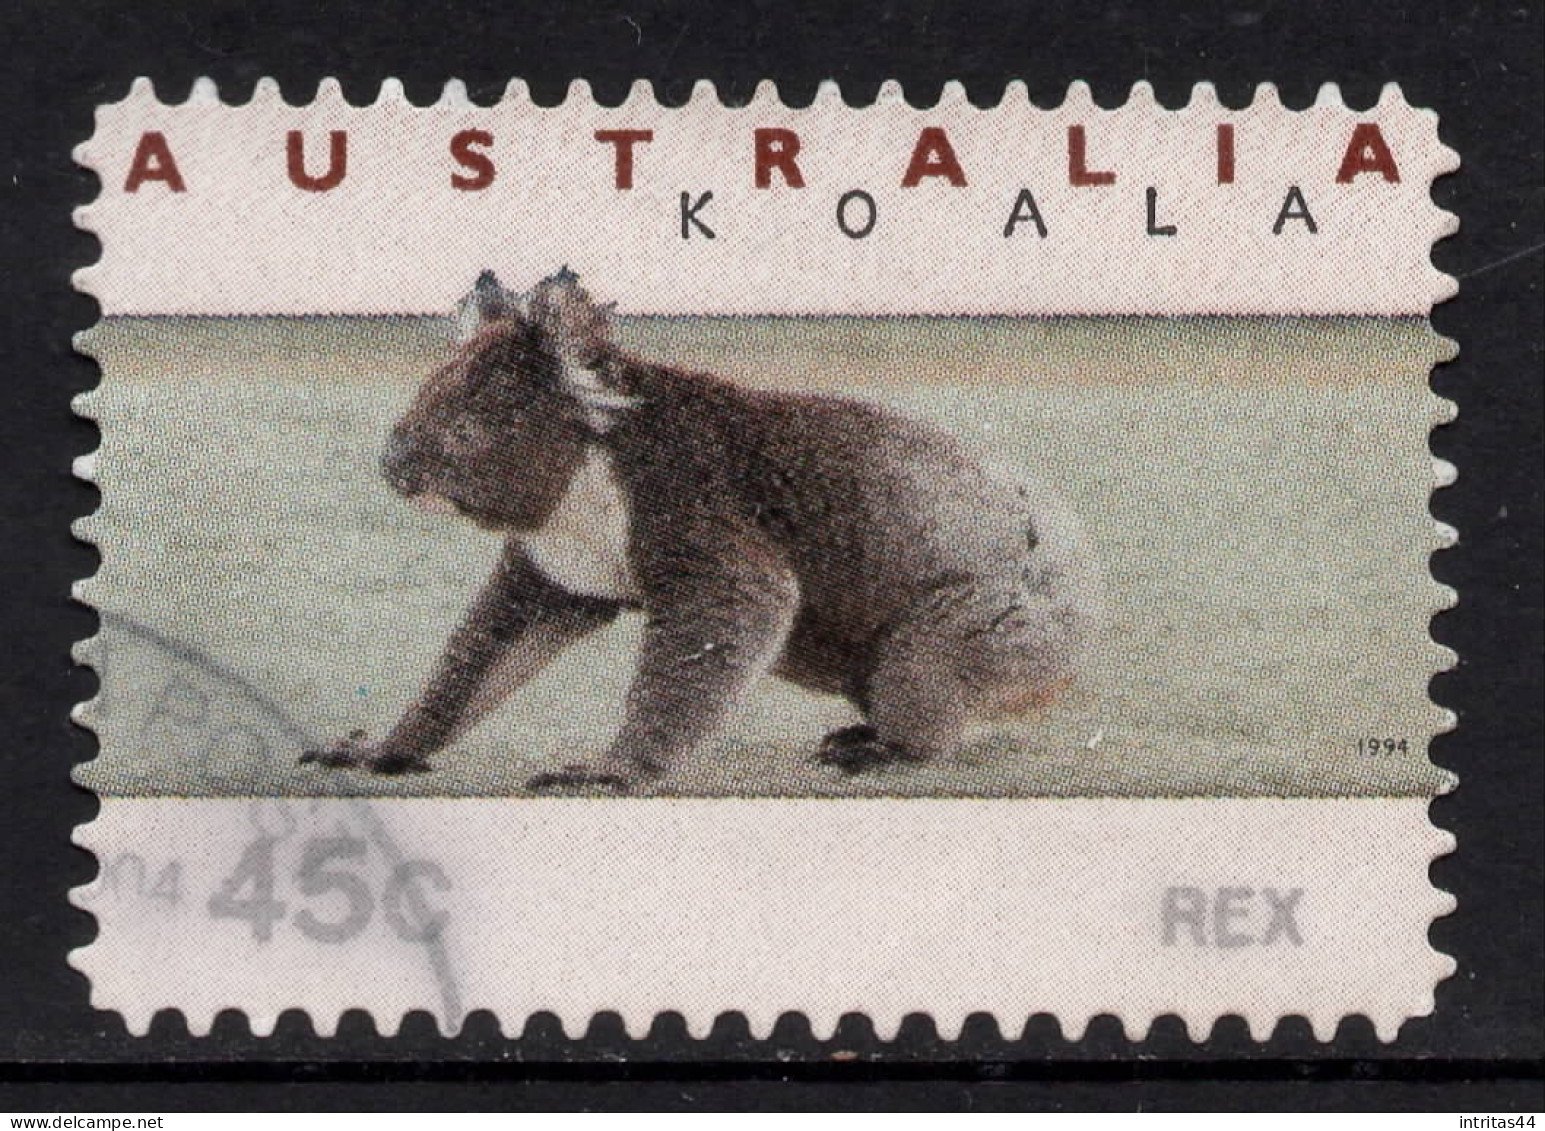 AUSTRALIA 1994 KOALA AND KANGAROO (COUNTER PRINTED) "45c KOALA ON GROUND" STAMP VFU - Oblitérés